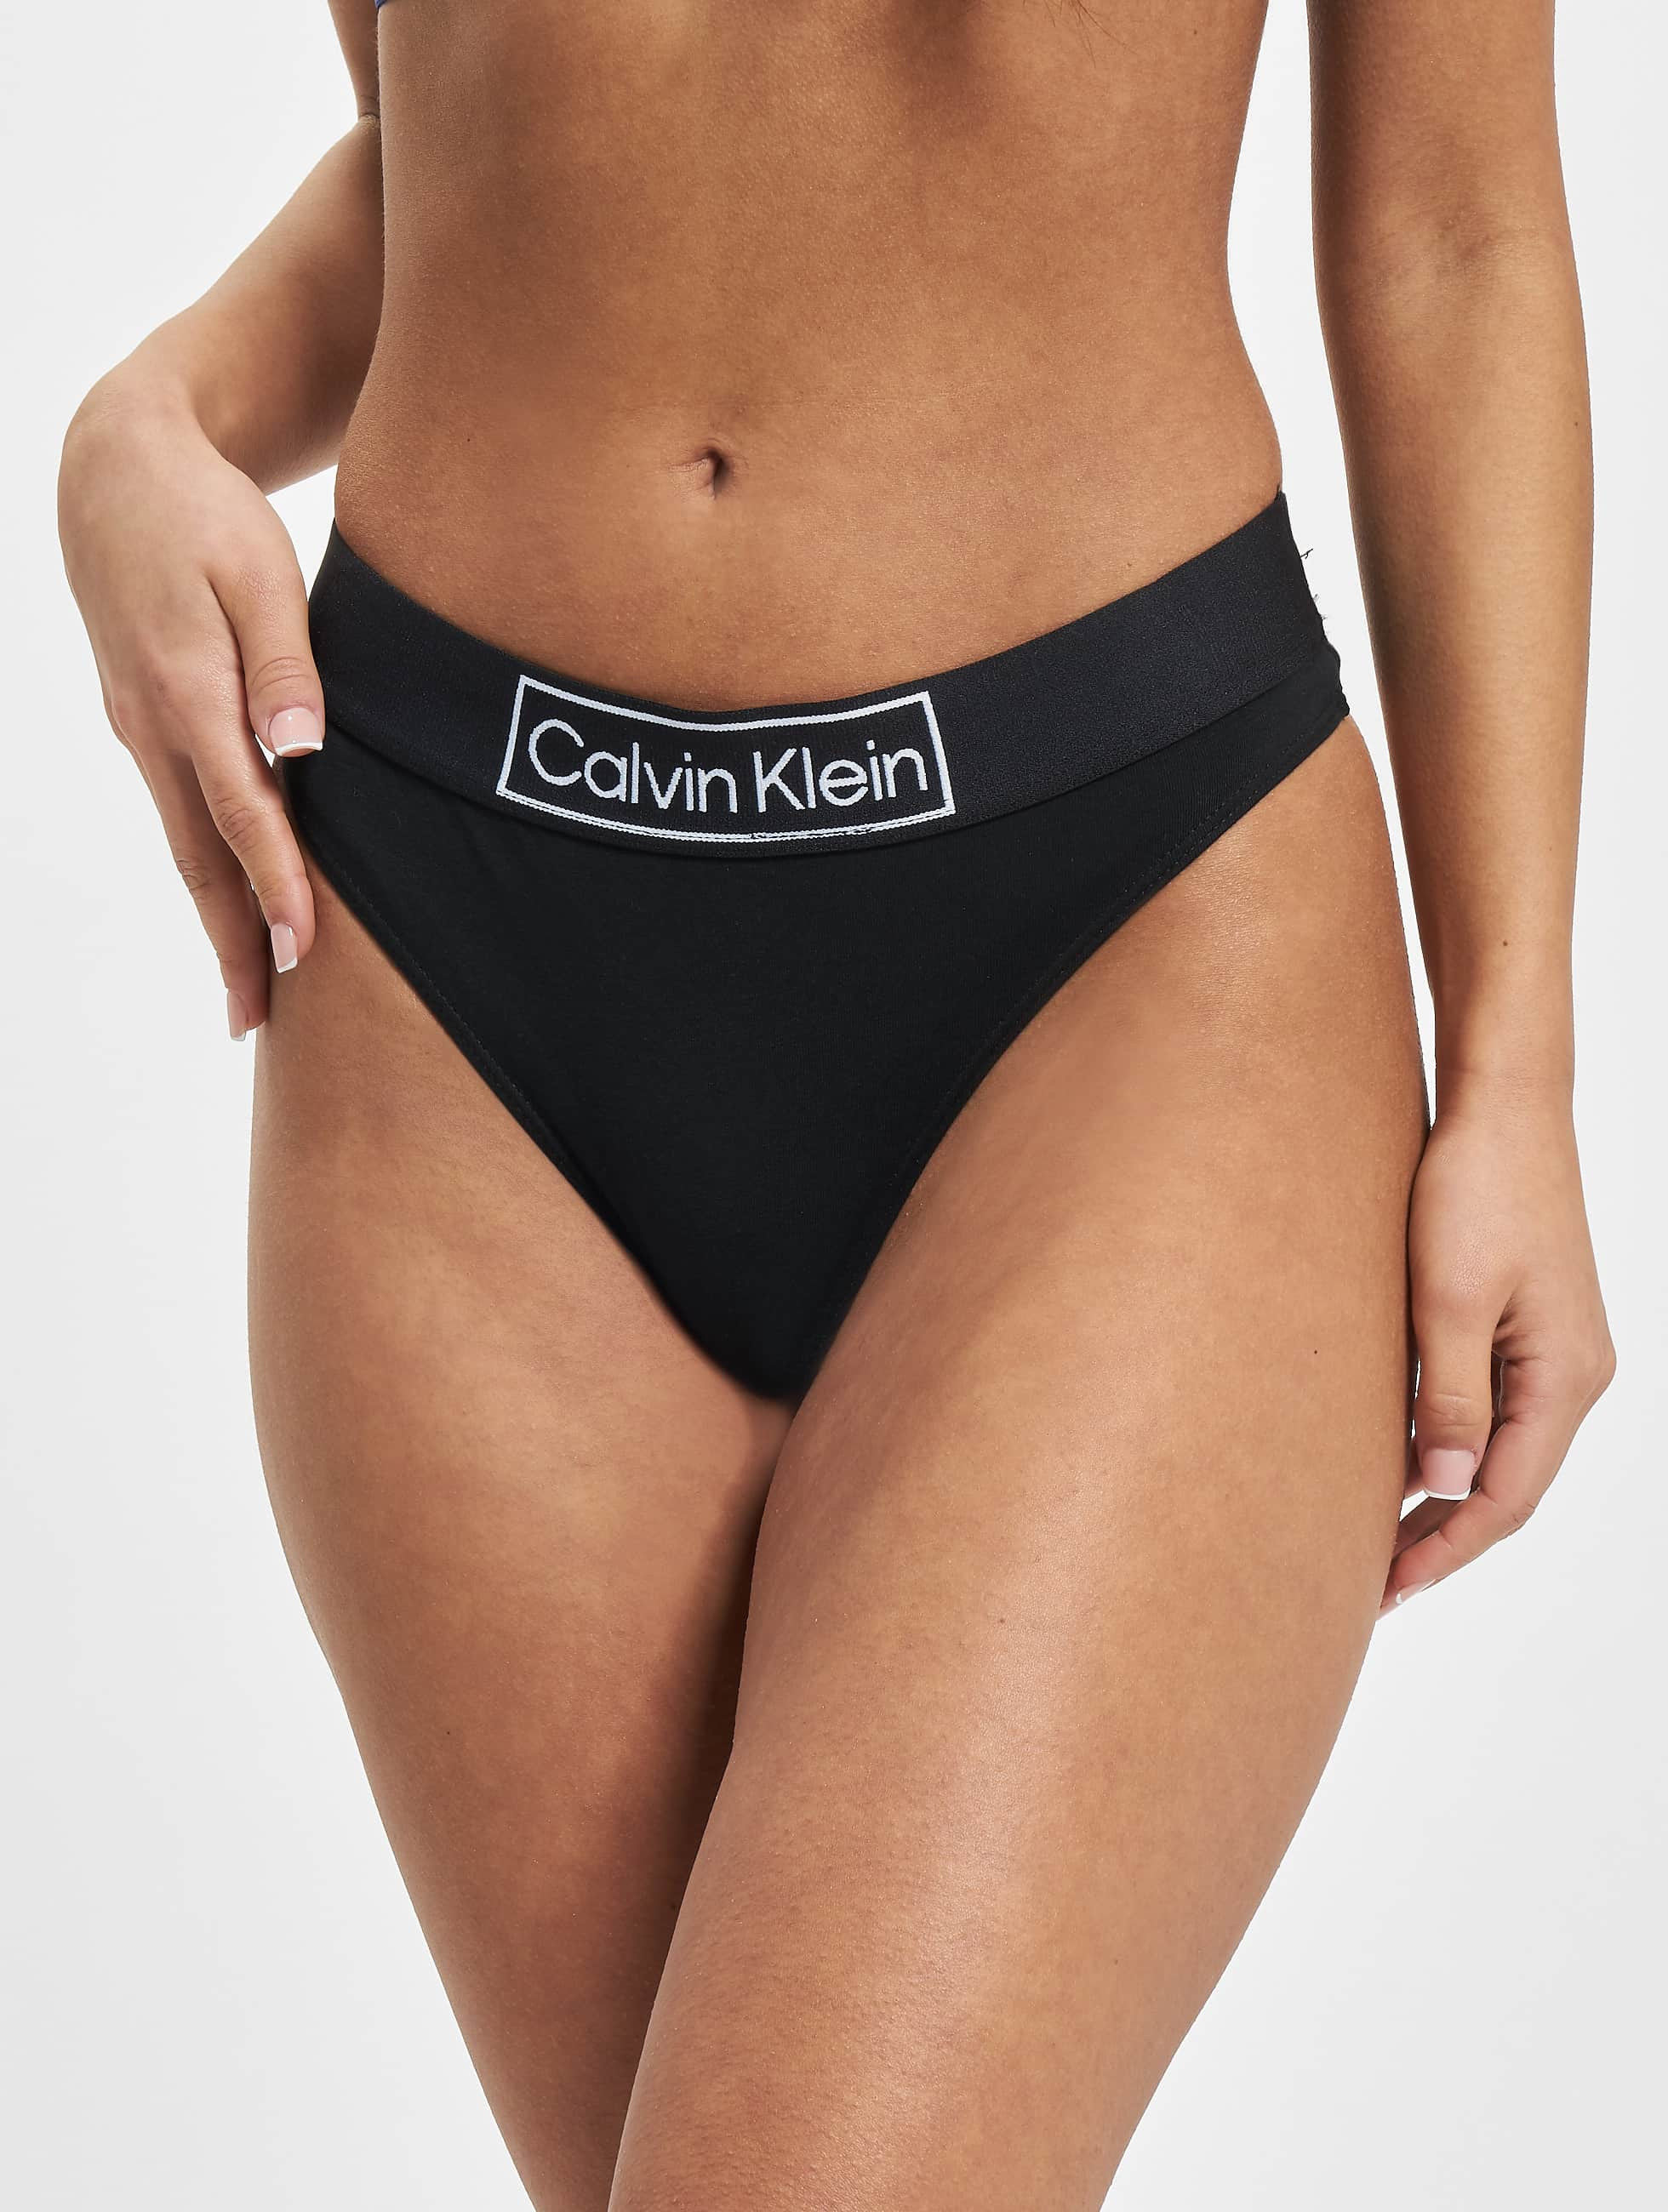 Calvin Klein Ropa interior / Moda de baño / Ropa Underwear 972444